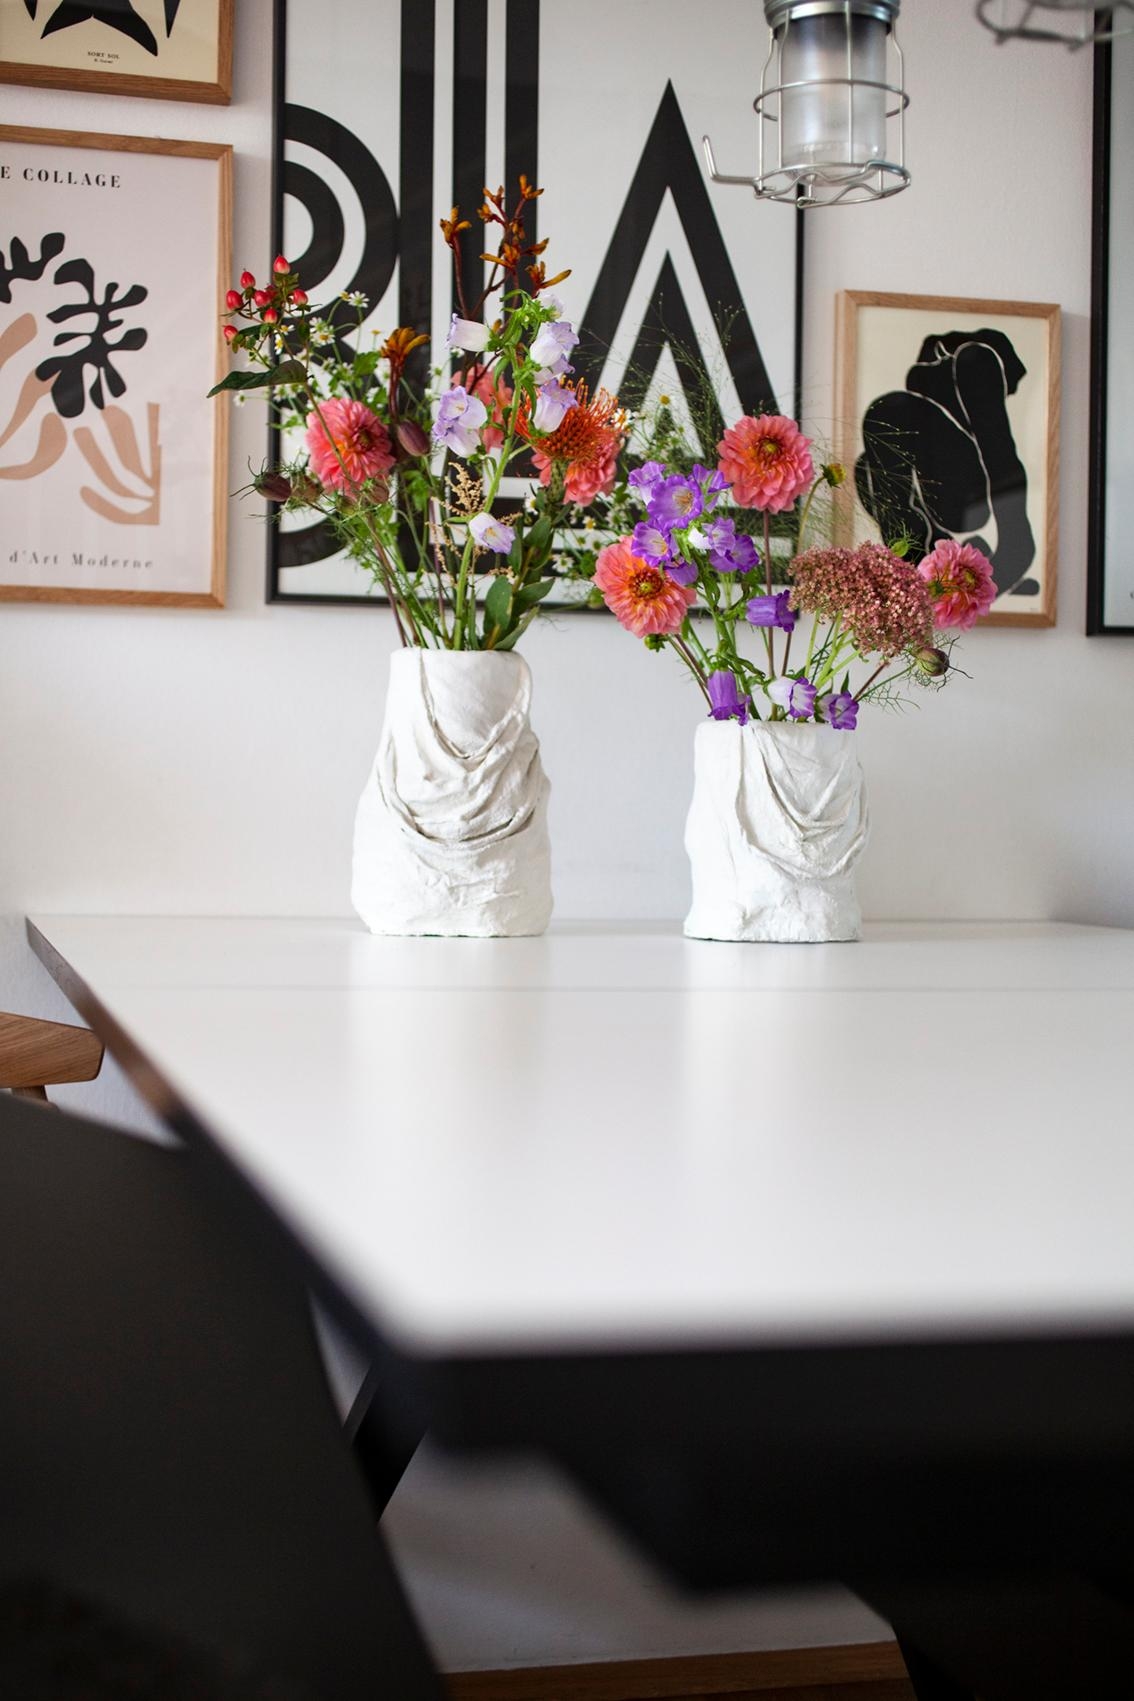 Heute gib’s Gips ...

#DIY #DIY-Vasen #Vasen #Blumen #Esstisch #Bildergalerie